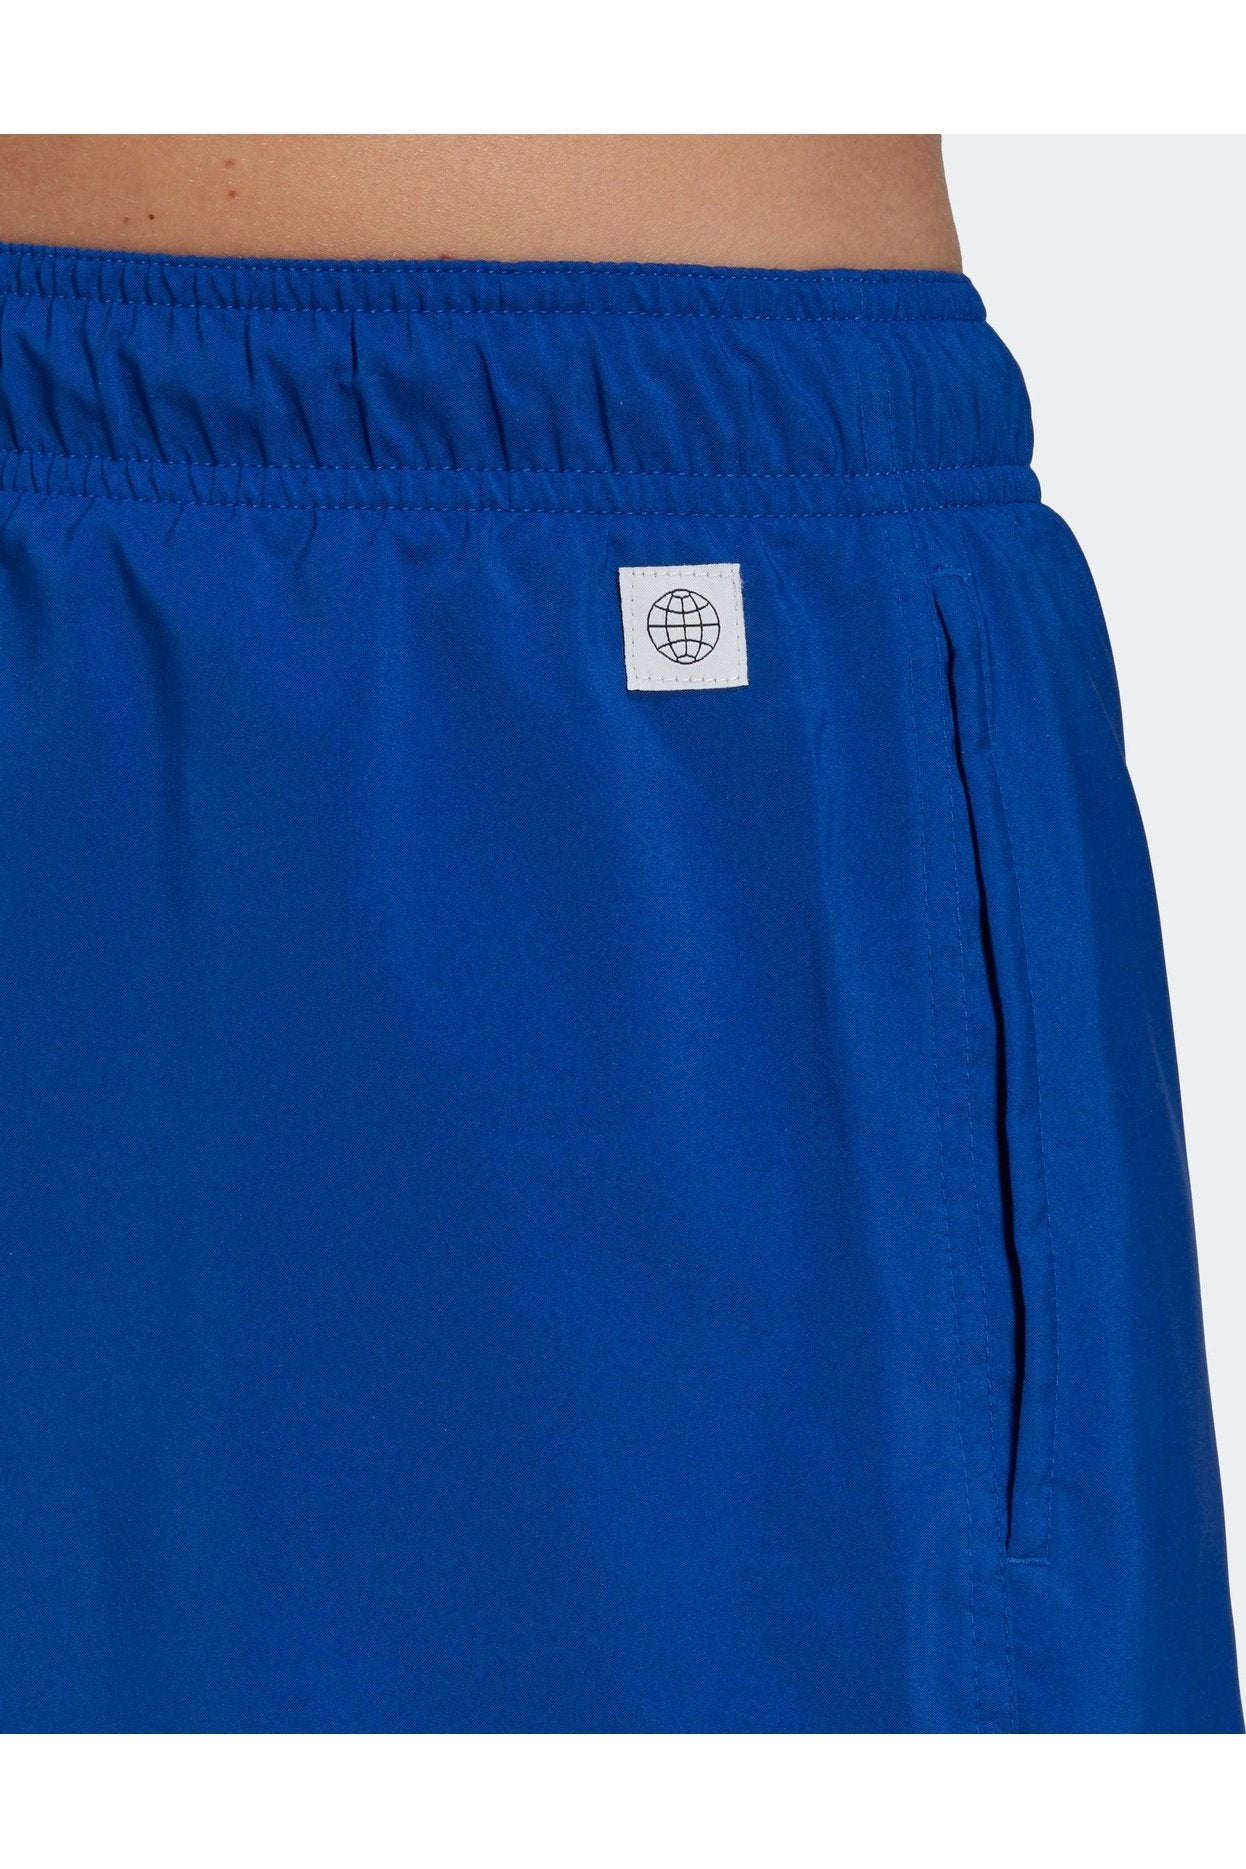 ADIDAS - בגד ים לגבר SOLID CLX בצבע כחול - MASHBIR//365